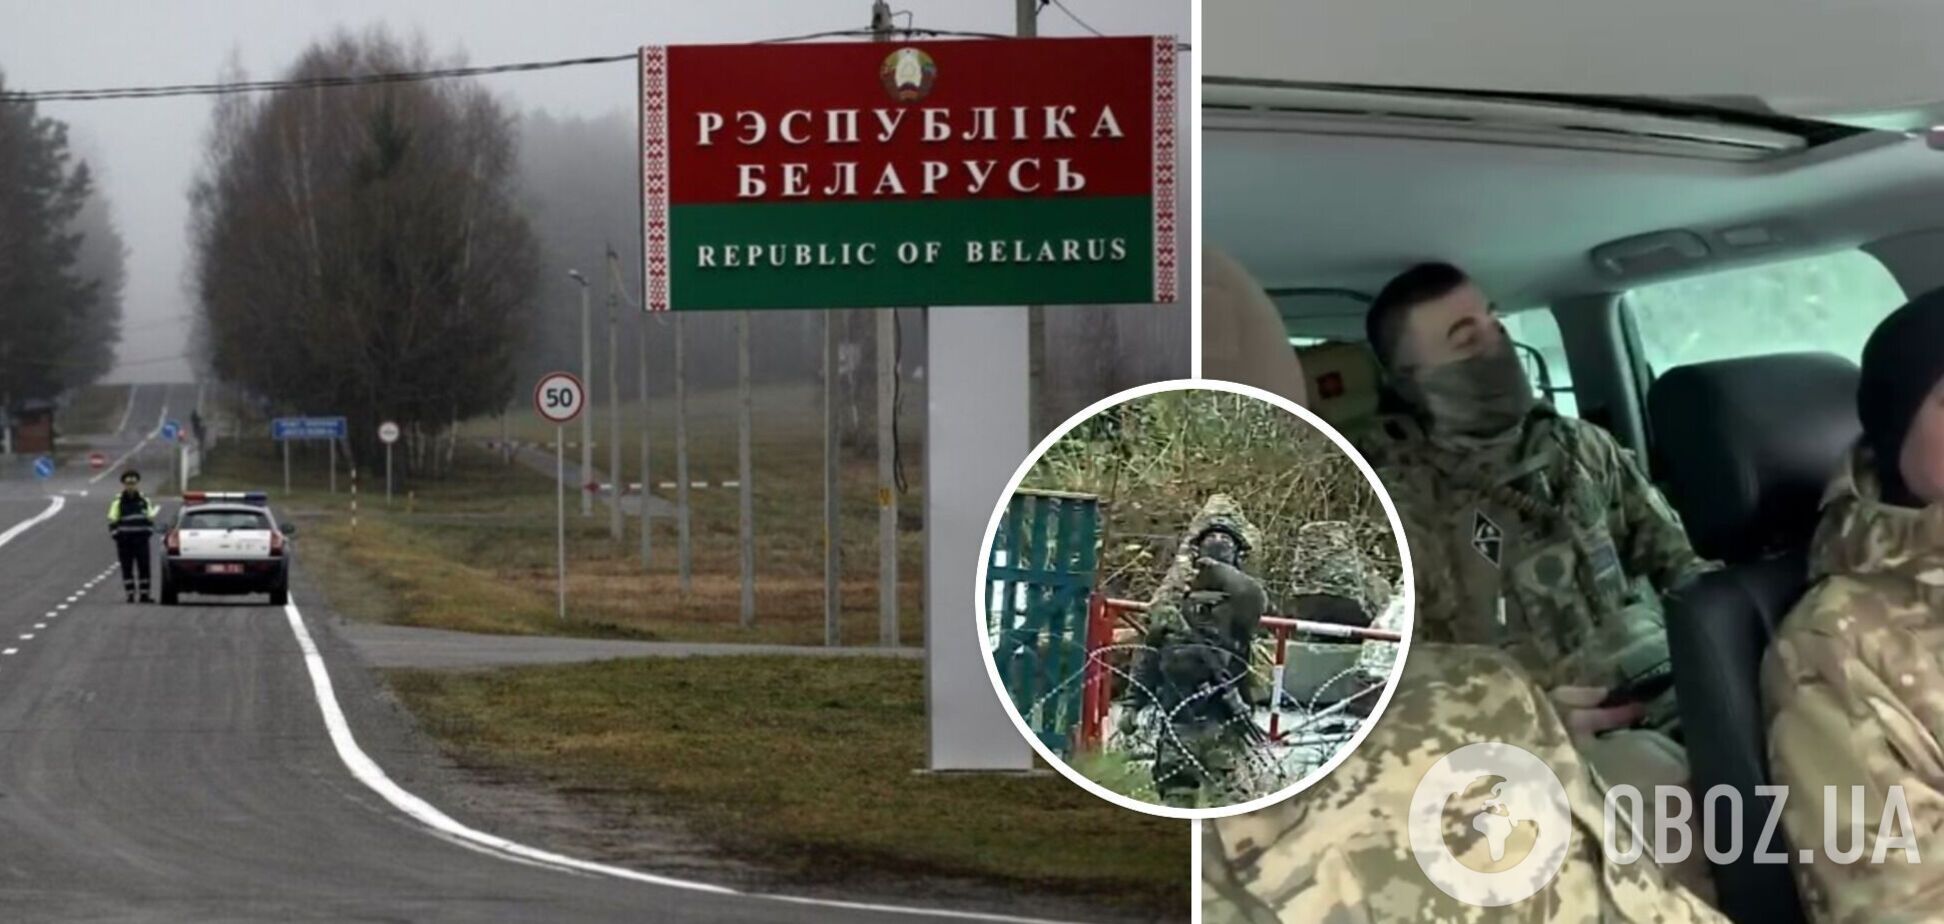 Співробітник ДПСУ, який служить на українсько-білоруському кордоні